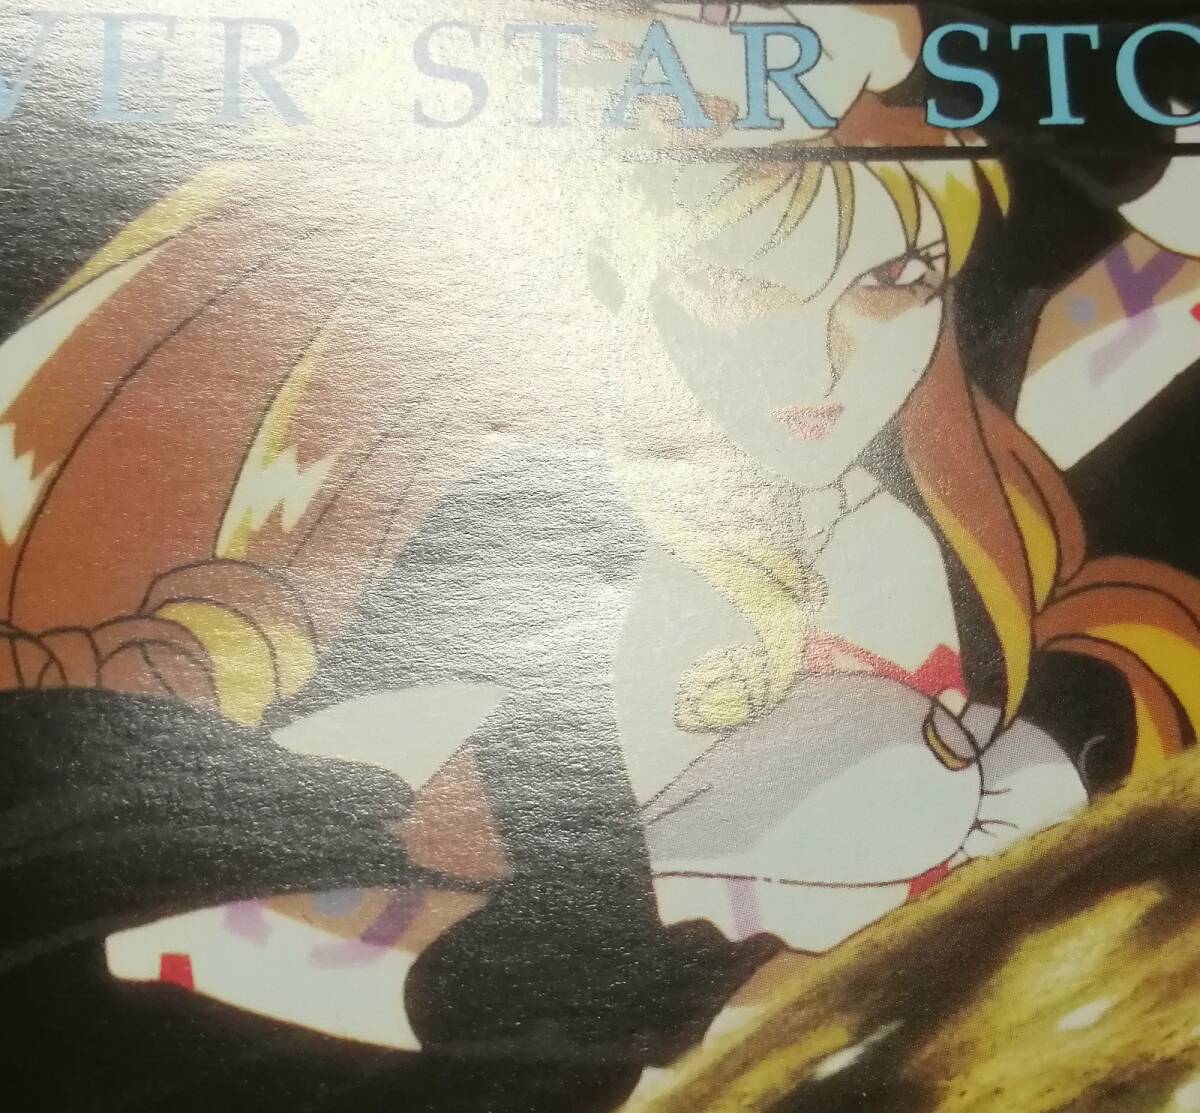 「ルナ シルバースターストーリー (LUNAR SILVER STAR STORY)」チラシ(ポスター) (角川書店、ゲームアーツ、セガサターン)